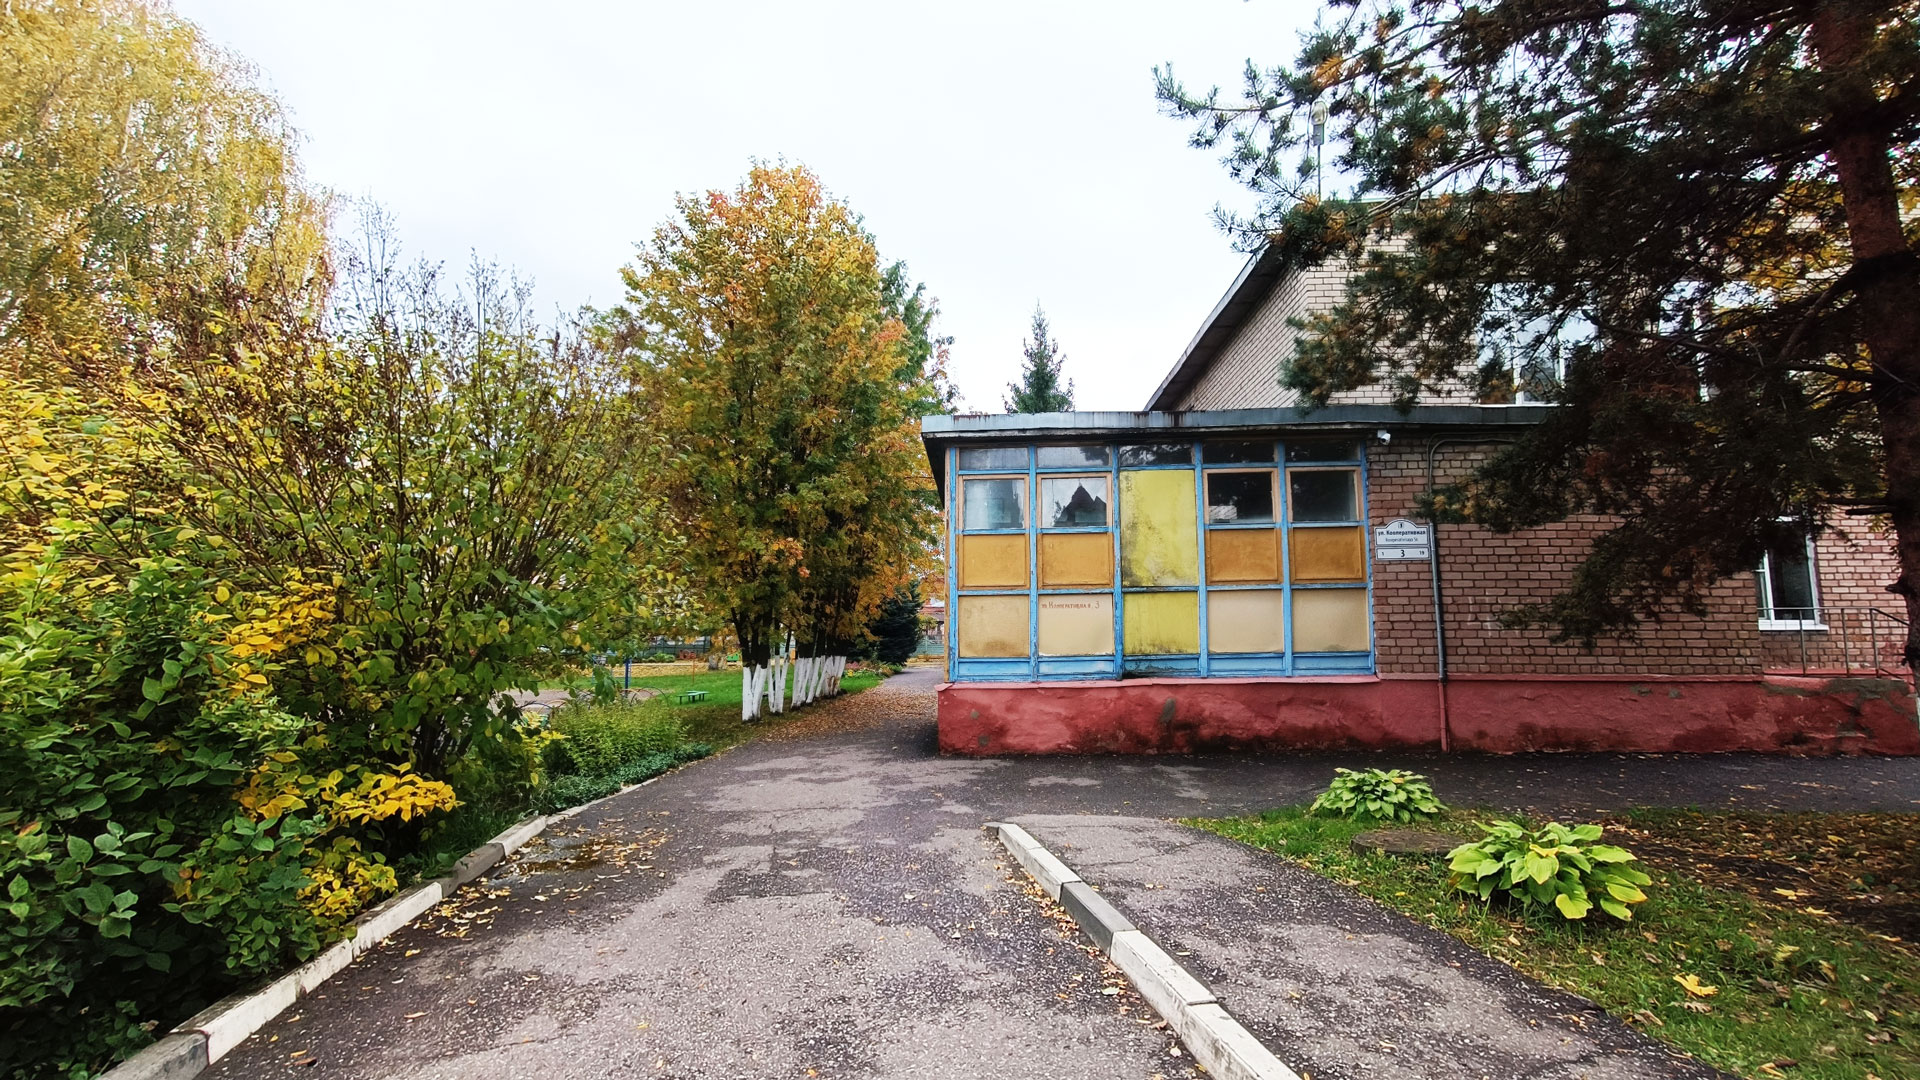 Детский сад 205 Ярославль: общий вид здания.